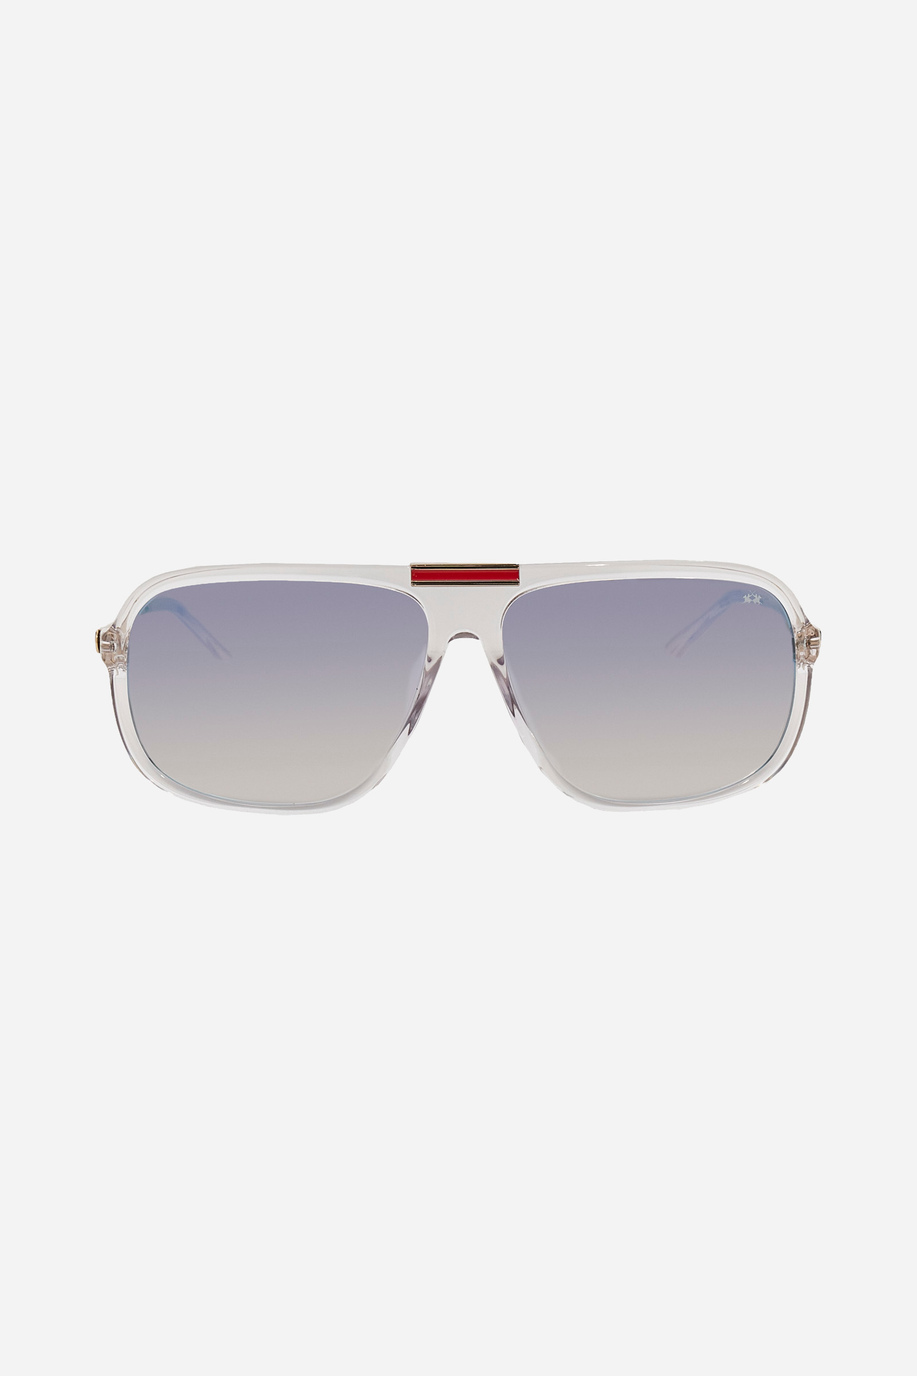 Metal sunglasses - Accessories | La Martina - Official Online Shop